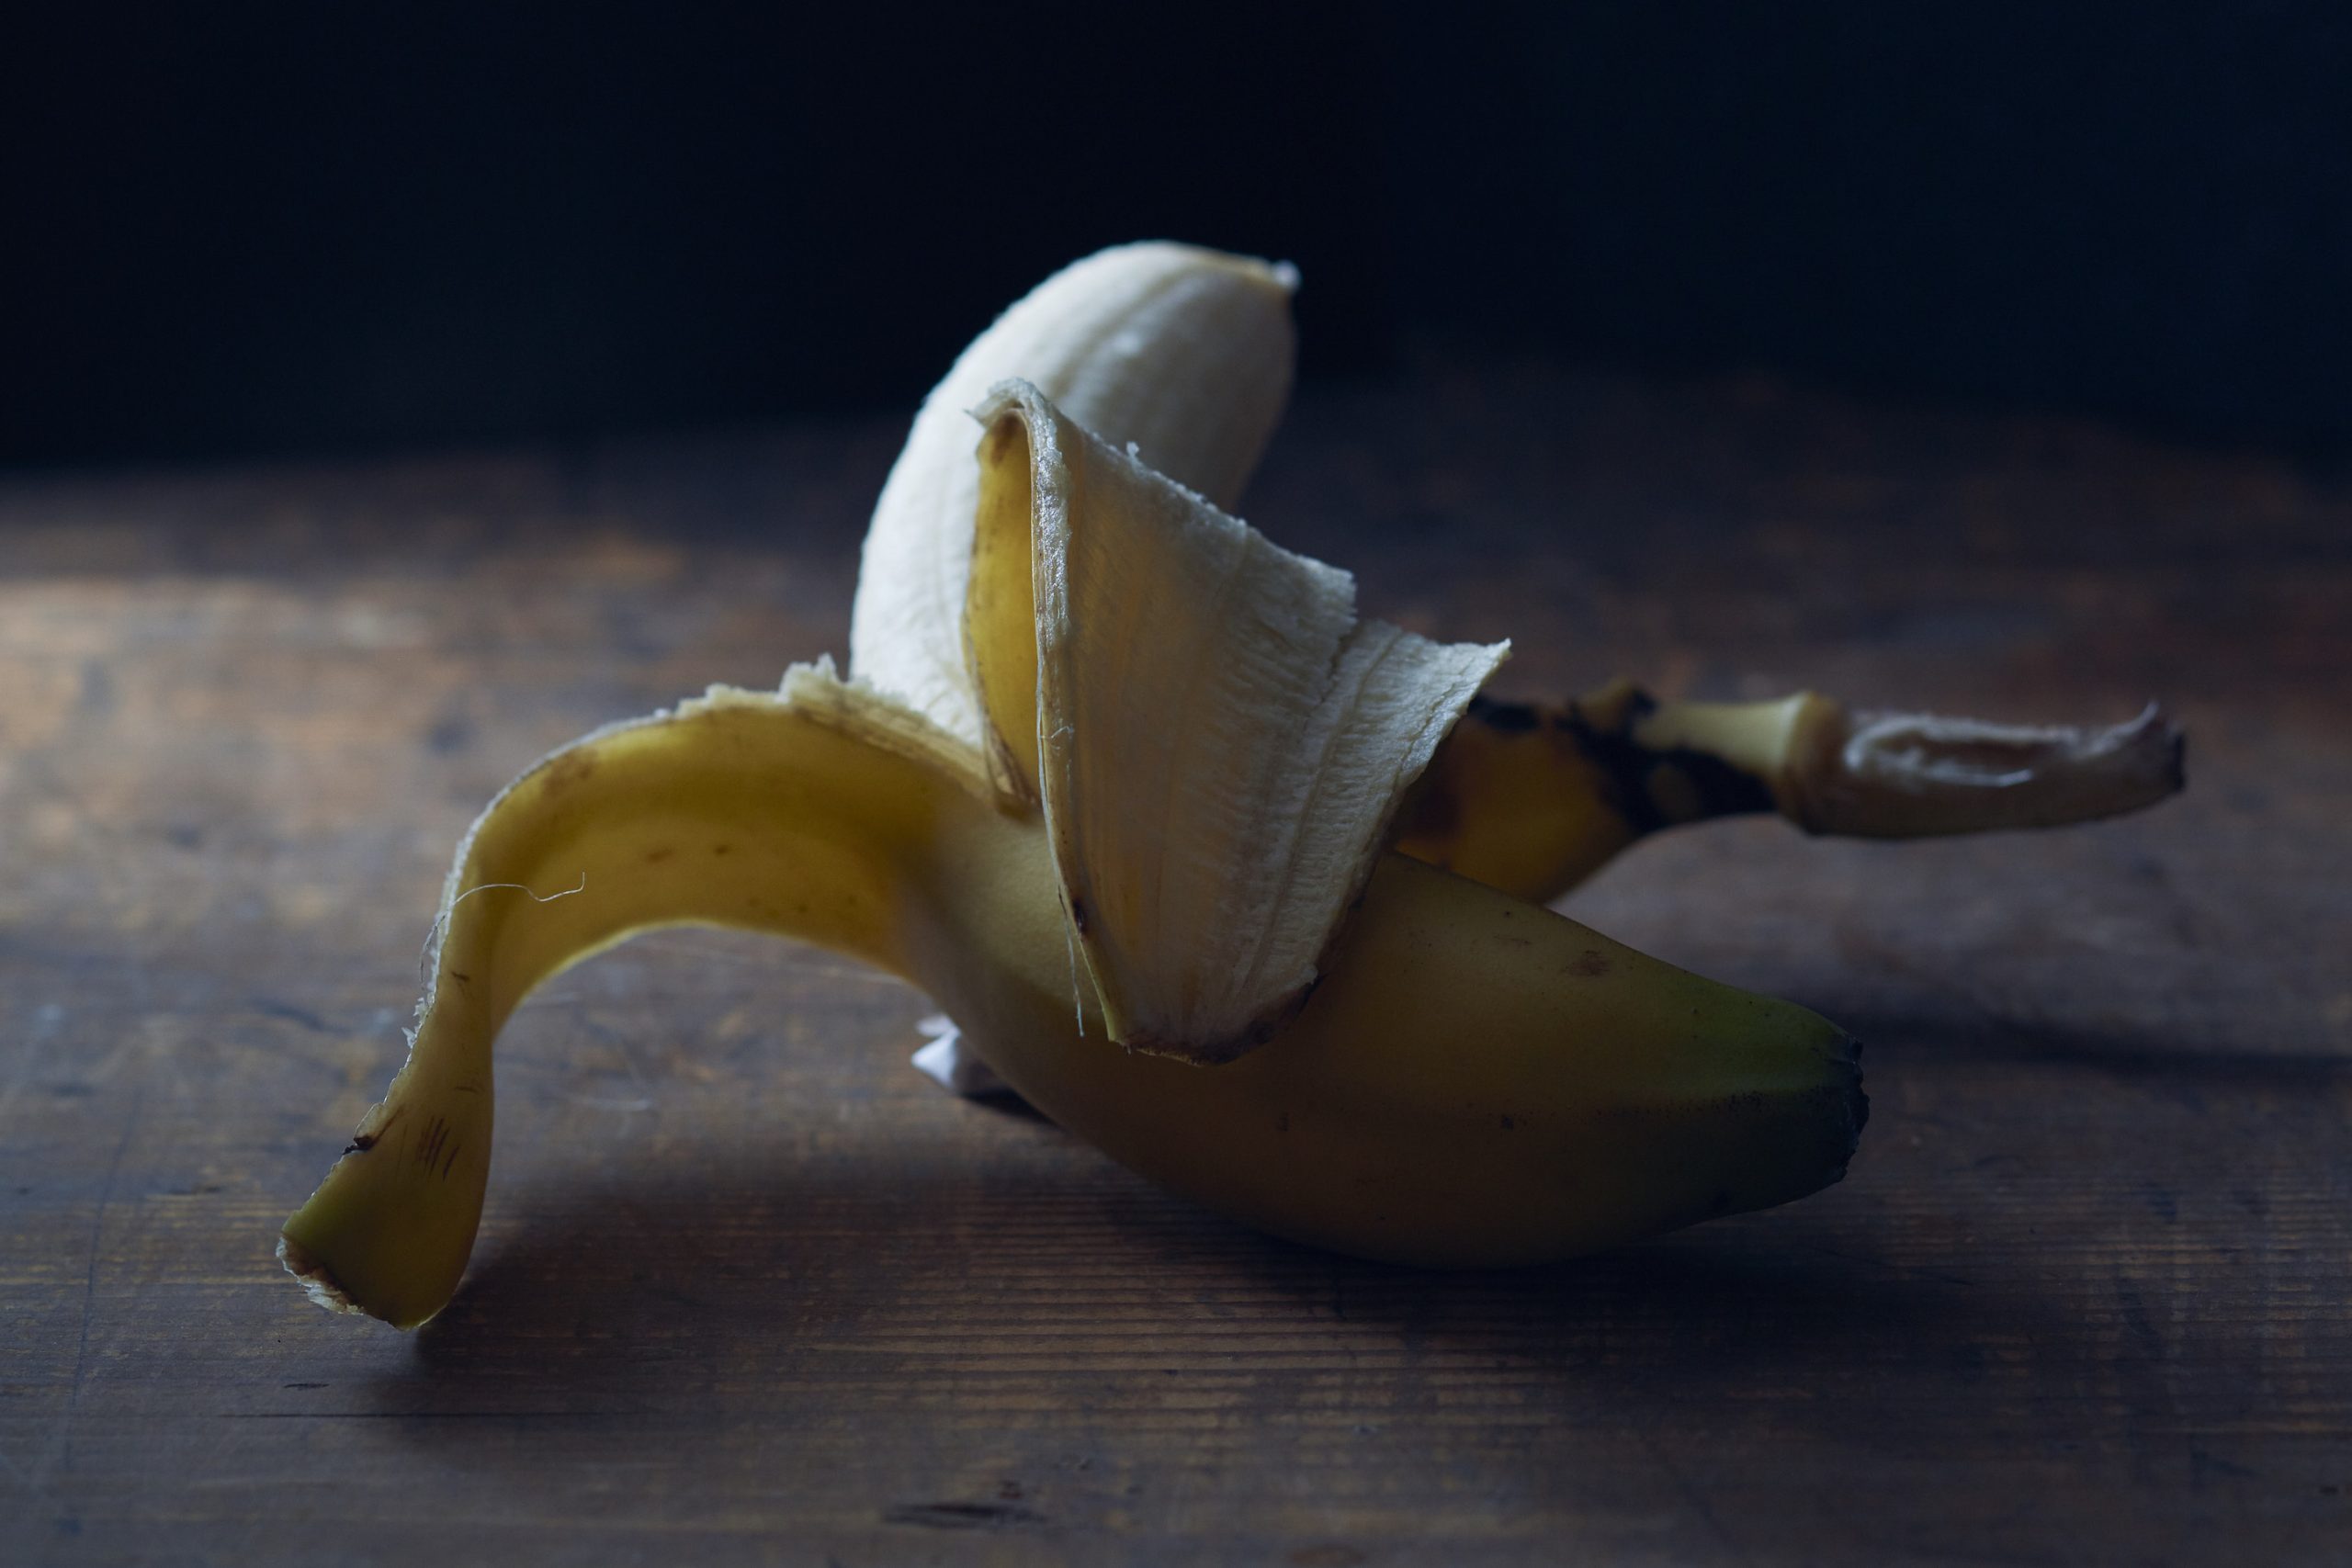 Ein halb geschälte Banane auf dem Tisch.